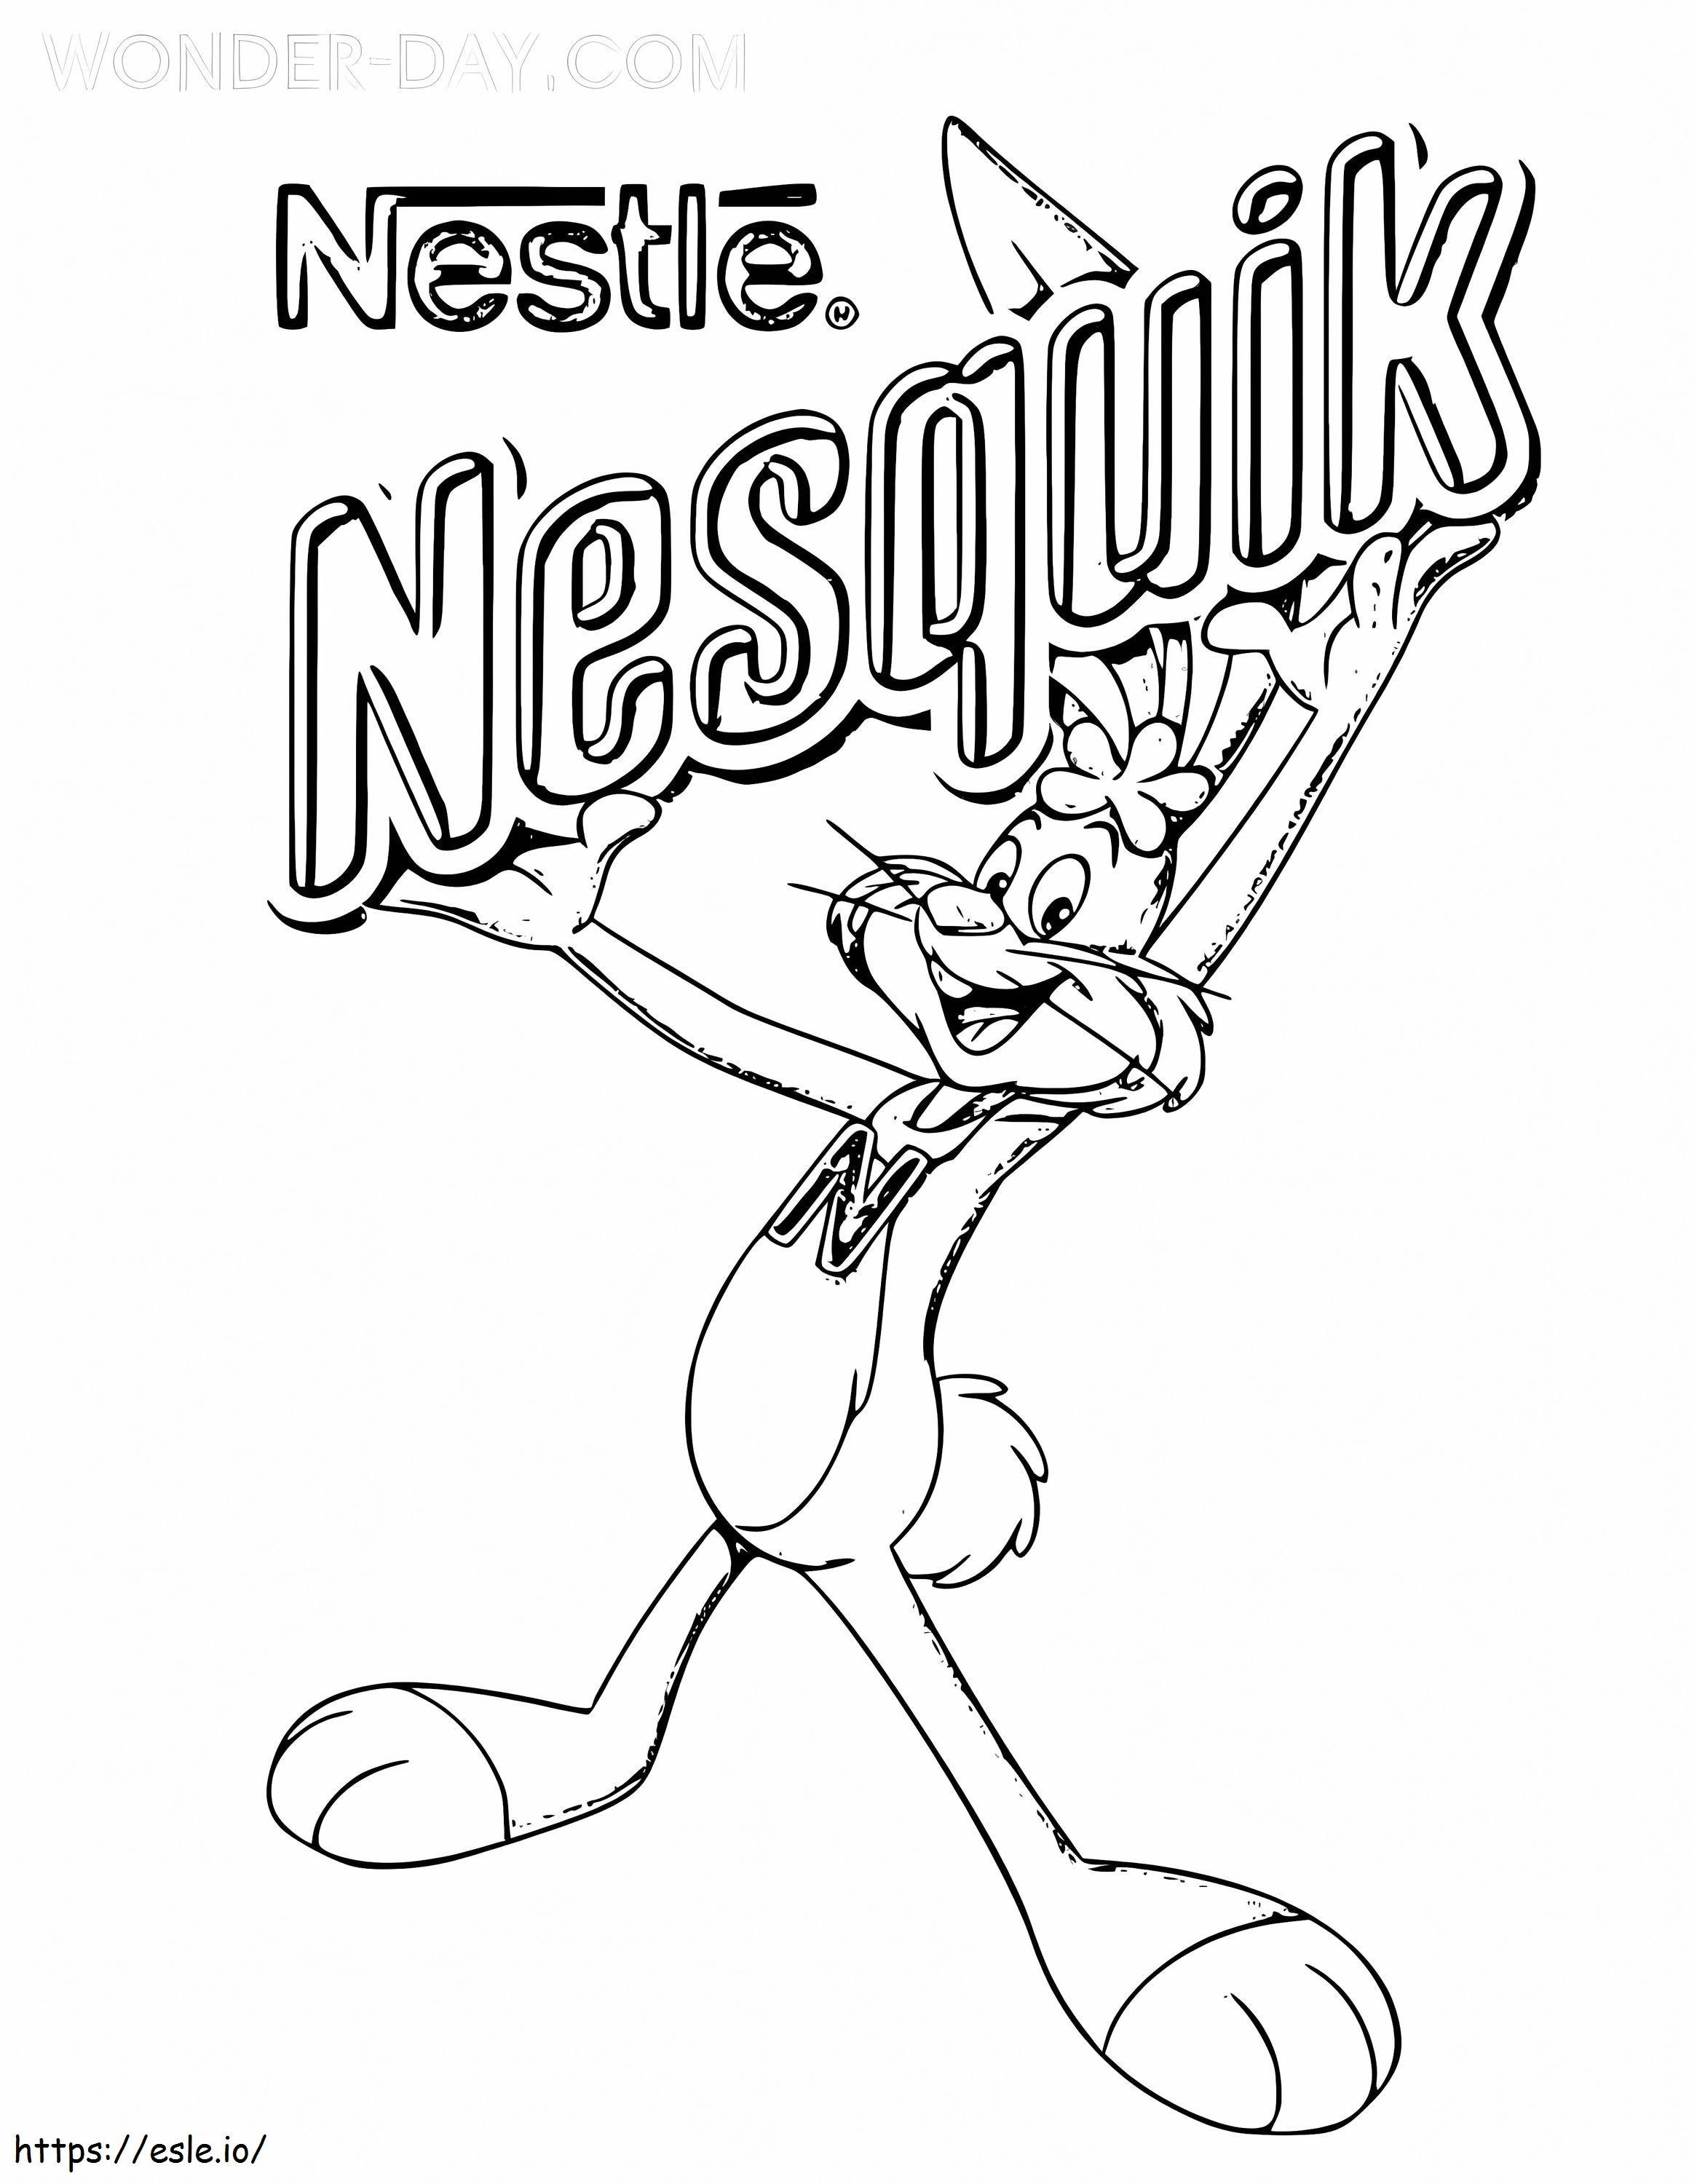 Nesquik-logo kleurplaat kleurplaat